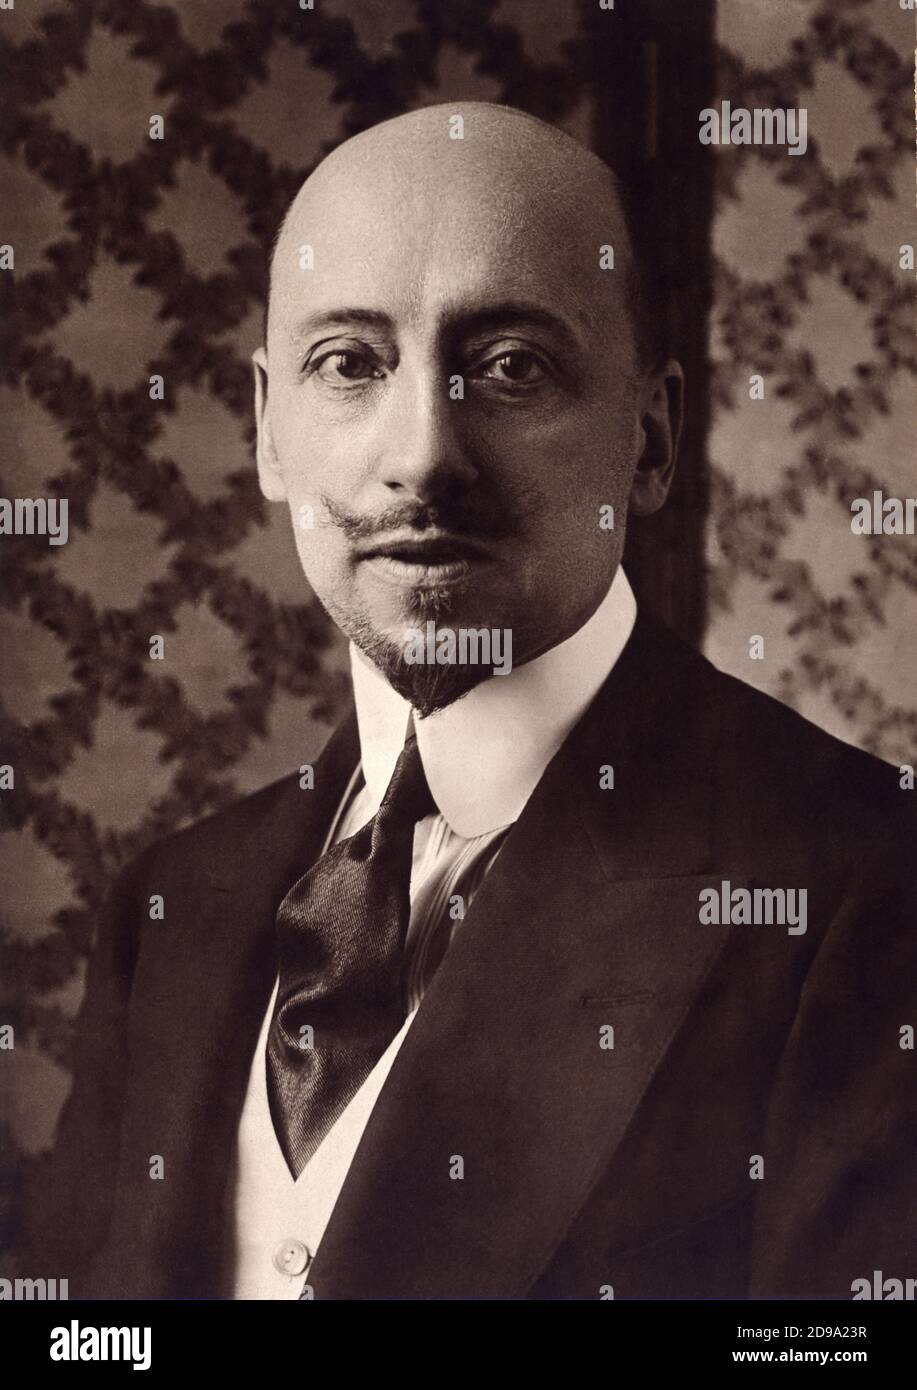 Il poeta , politico e scrittore italiano GABRIELE D'ANNUNZIO ( 1863 - 1938 ) in Francia . - SCRITTORE - LETTERATURA - LETTERATURA - letterato - POETA - POESIA - POESIA - baffi - baffi - ritratto - ritratto - DAnnunzio - D'Annunzio - D'ANNUNZIO - cravatta - cravatta - colletto - colletto - baffi - baffi - barba - barba - testa pelata - calvo - MODA - MODA - MODA - DANDY - ELEGANZA - ART NOUVEAU - BELLE EPOQUE - DECADENTISMO --- ARCHIVIO GBB Foto Stock